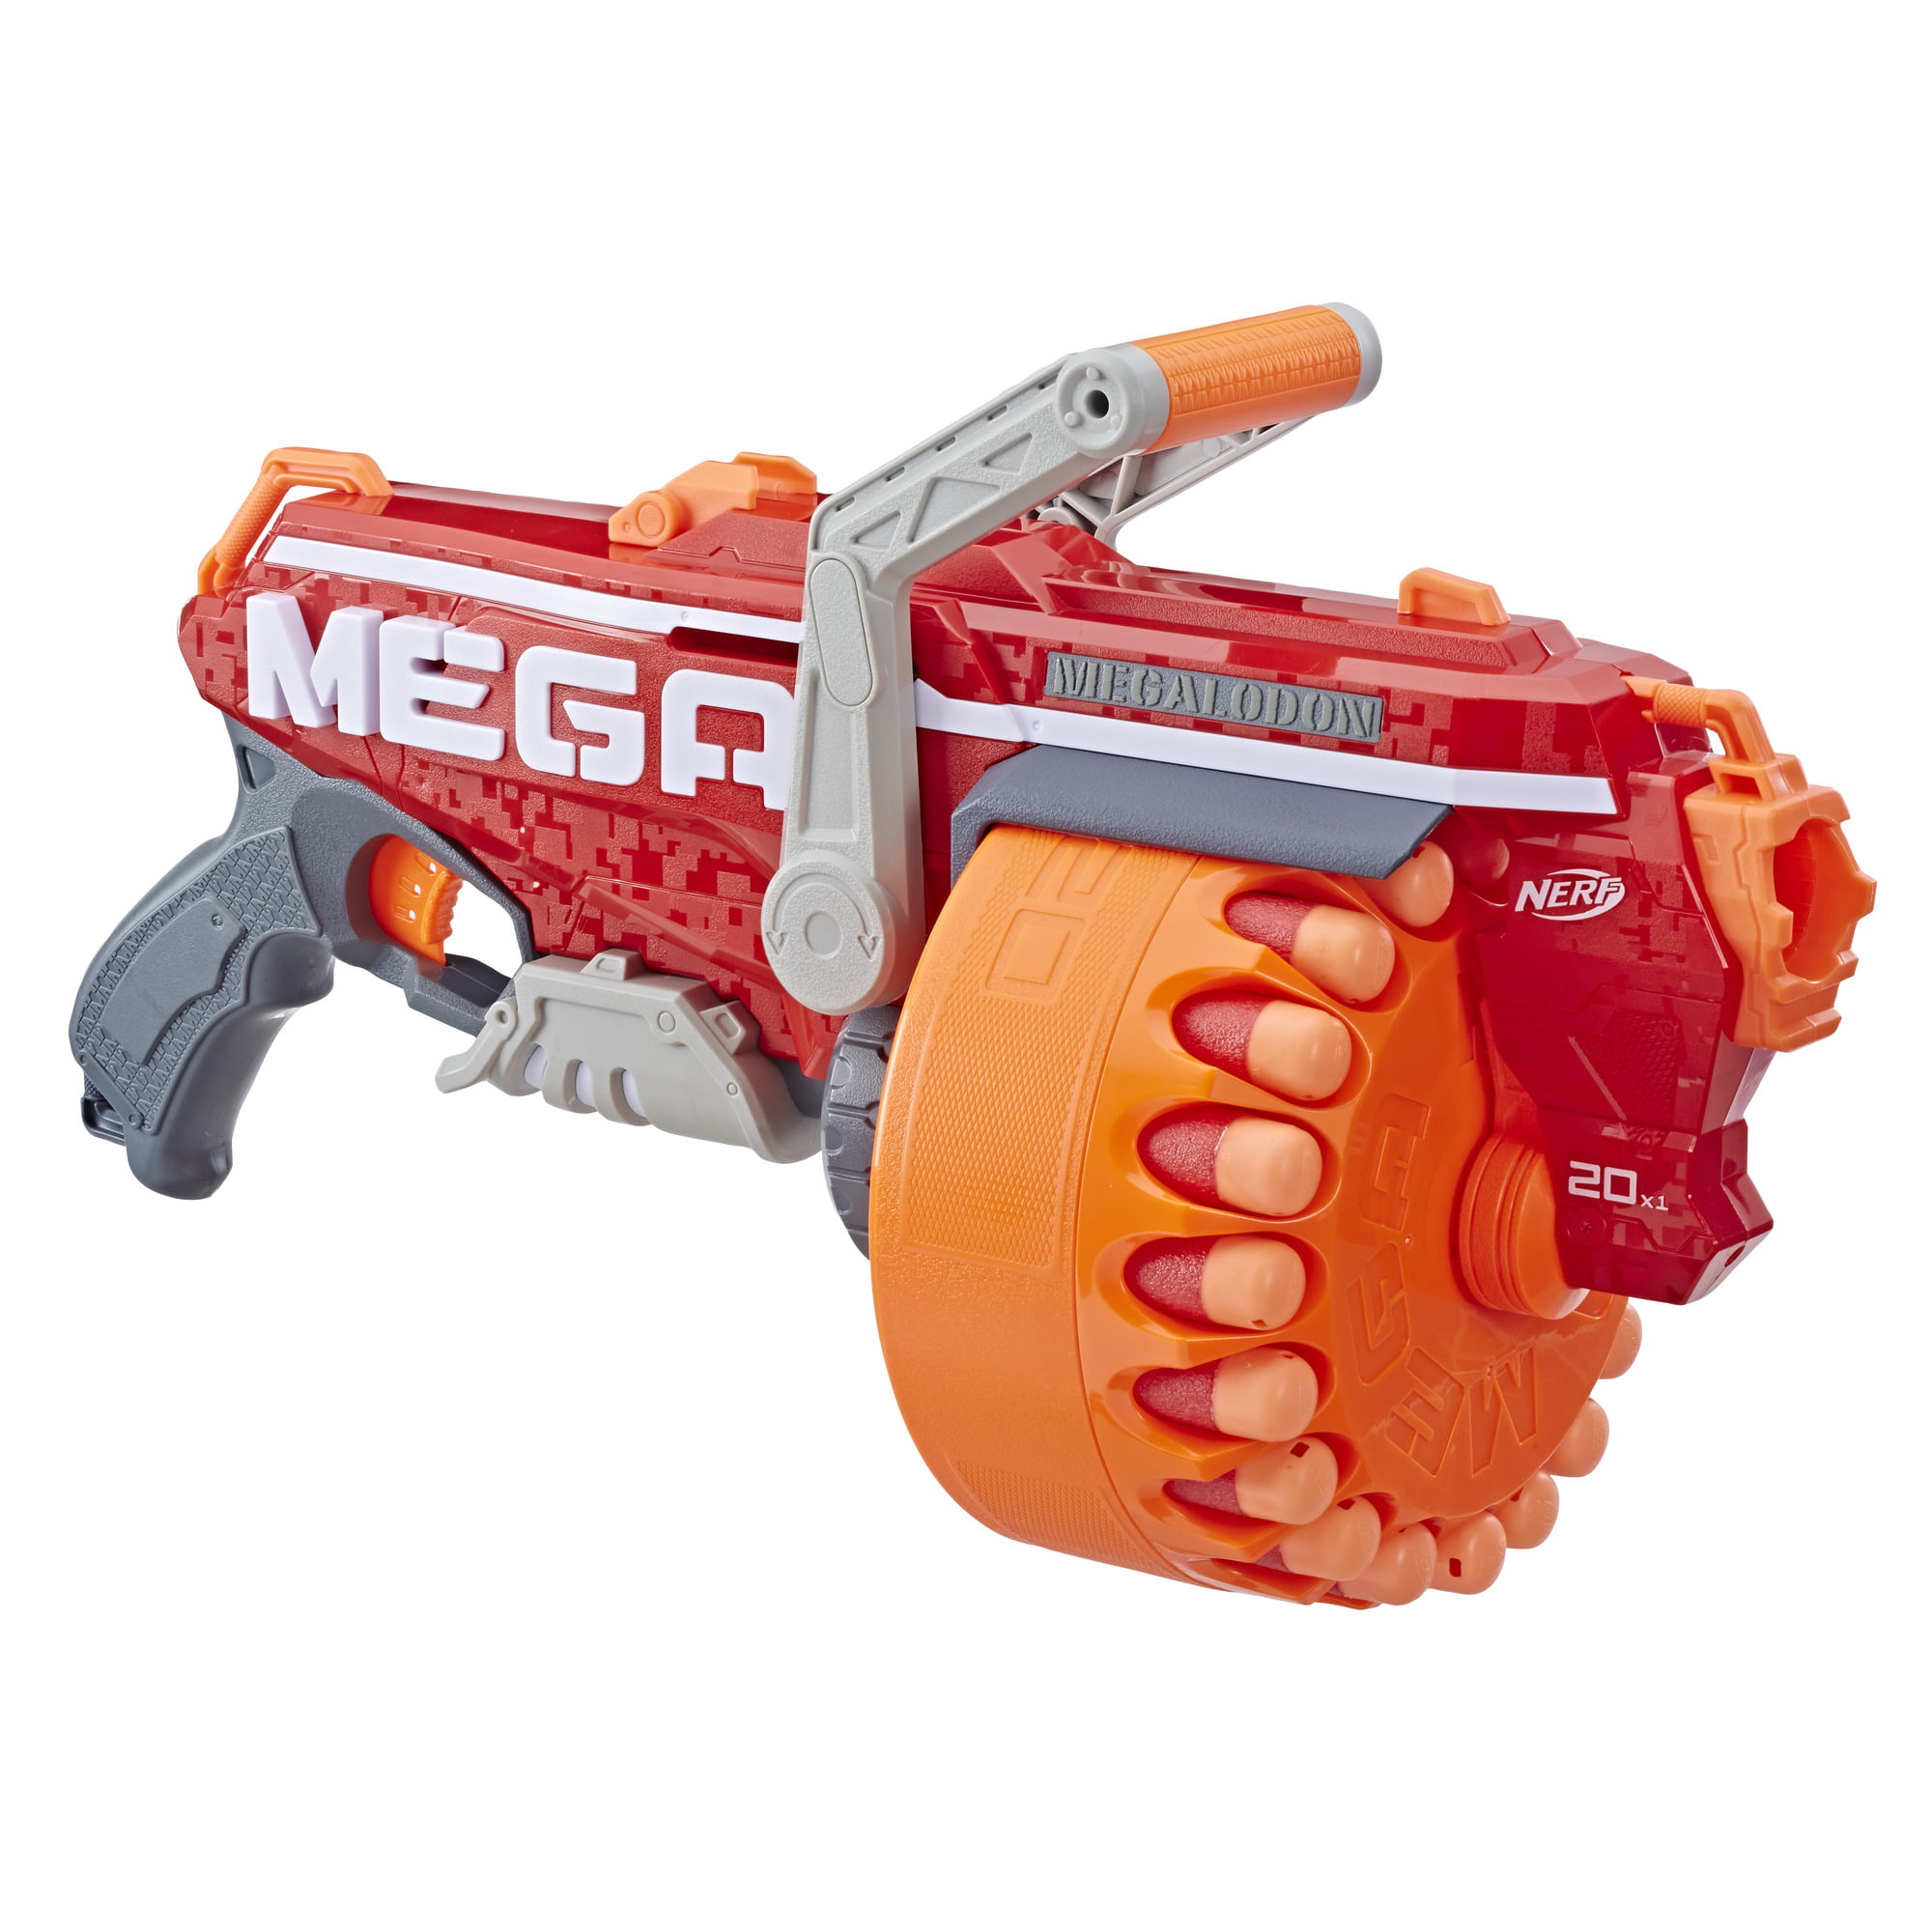 Nerf N-Strike Mega Blaster Toy Gun Foam Soft Bullet Darts For Kid Christmas Gift 